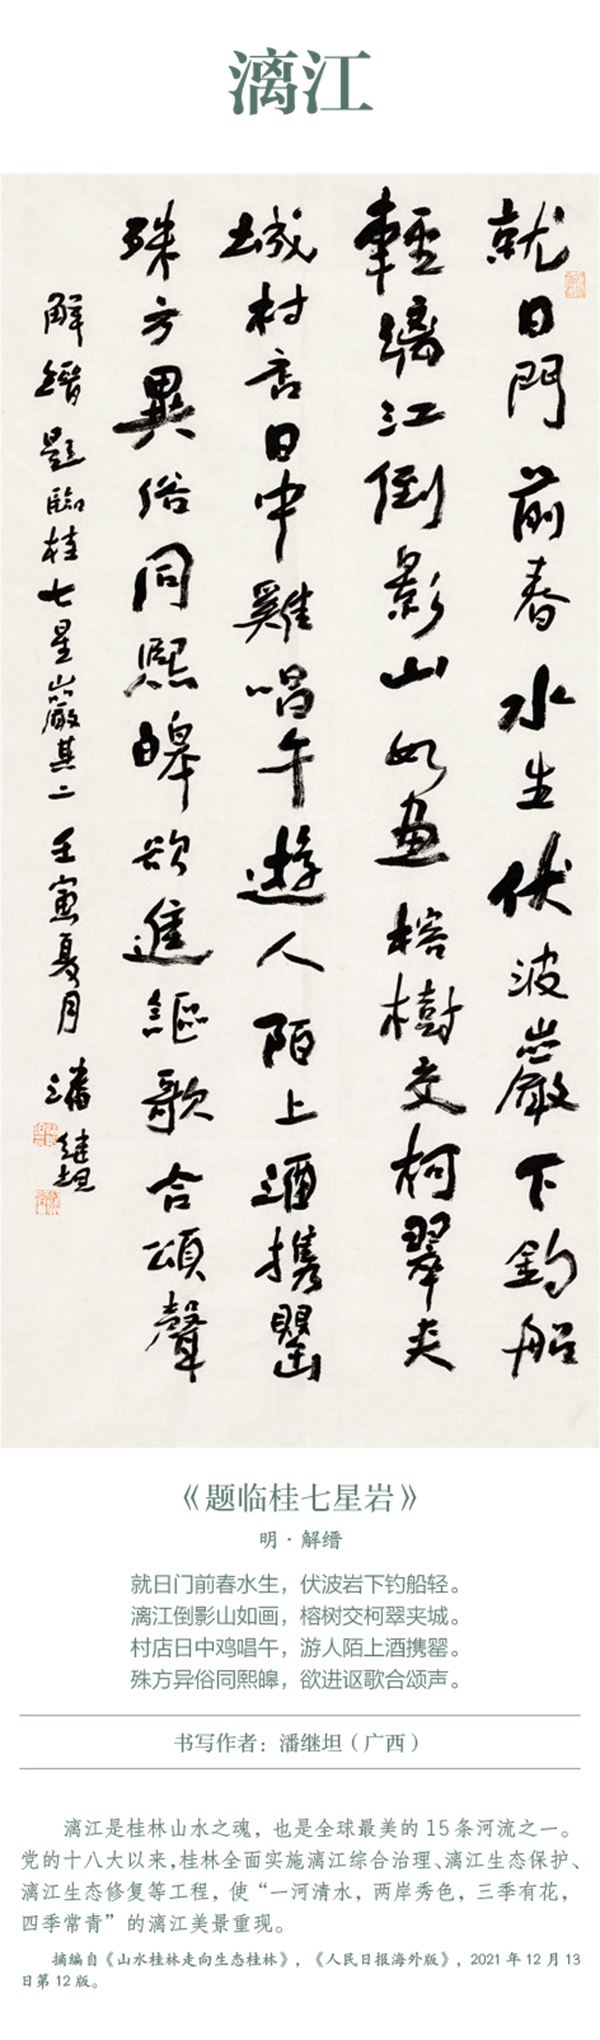 中国书协主题创作书法系列展——美丽中国插图11题字网